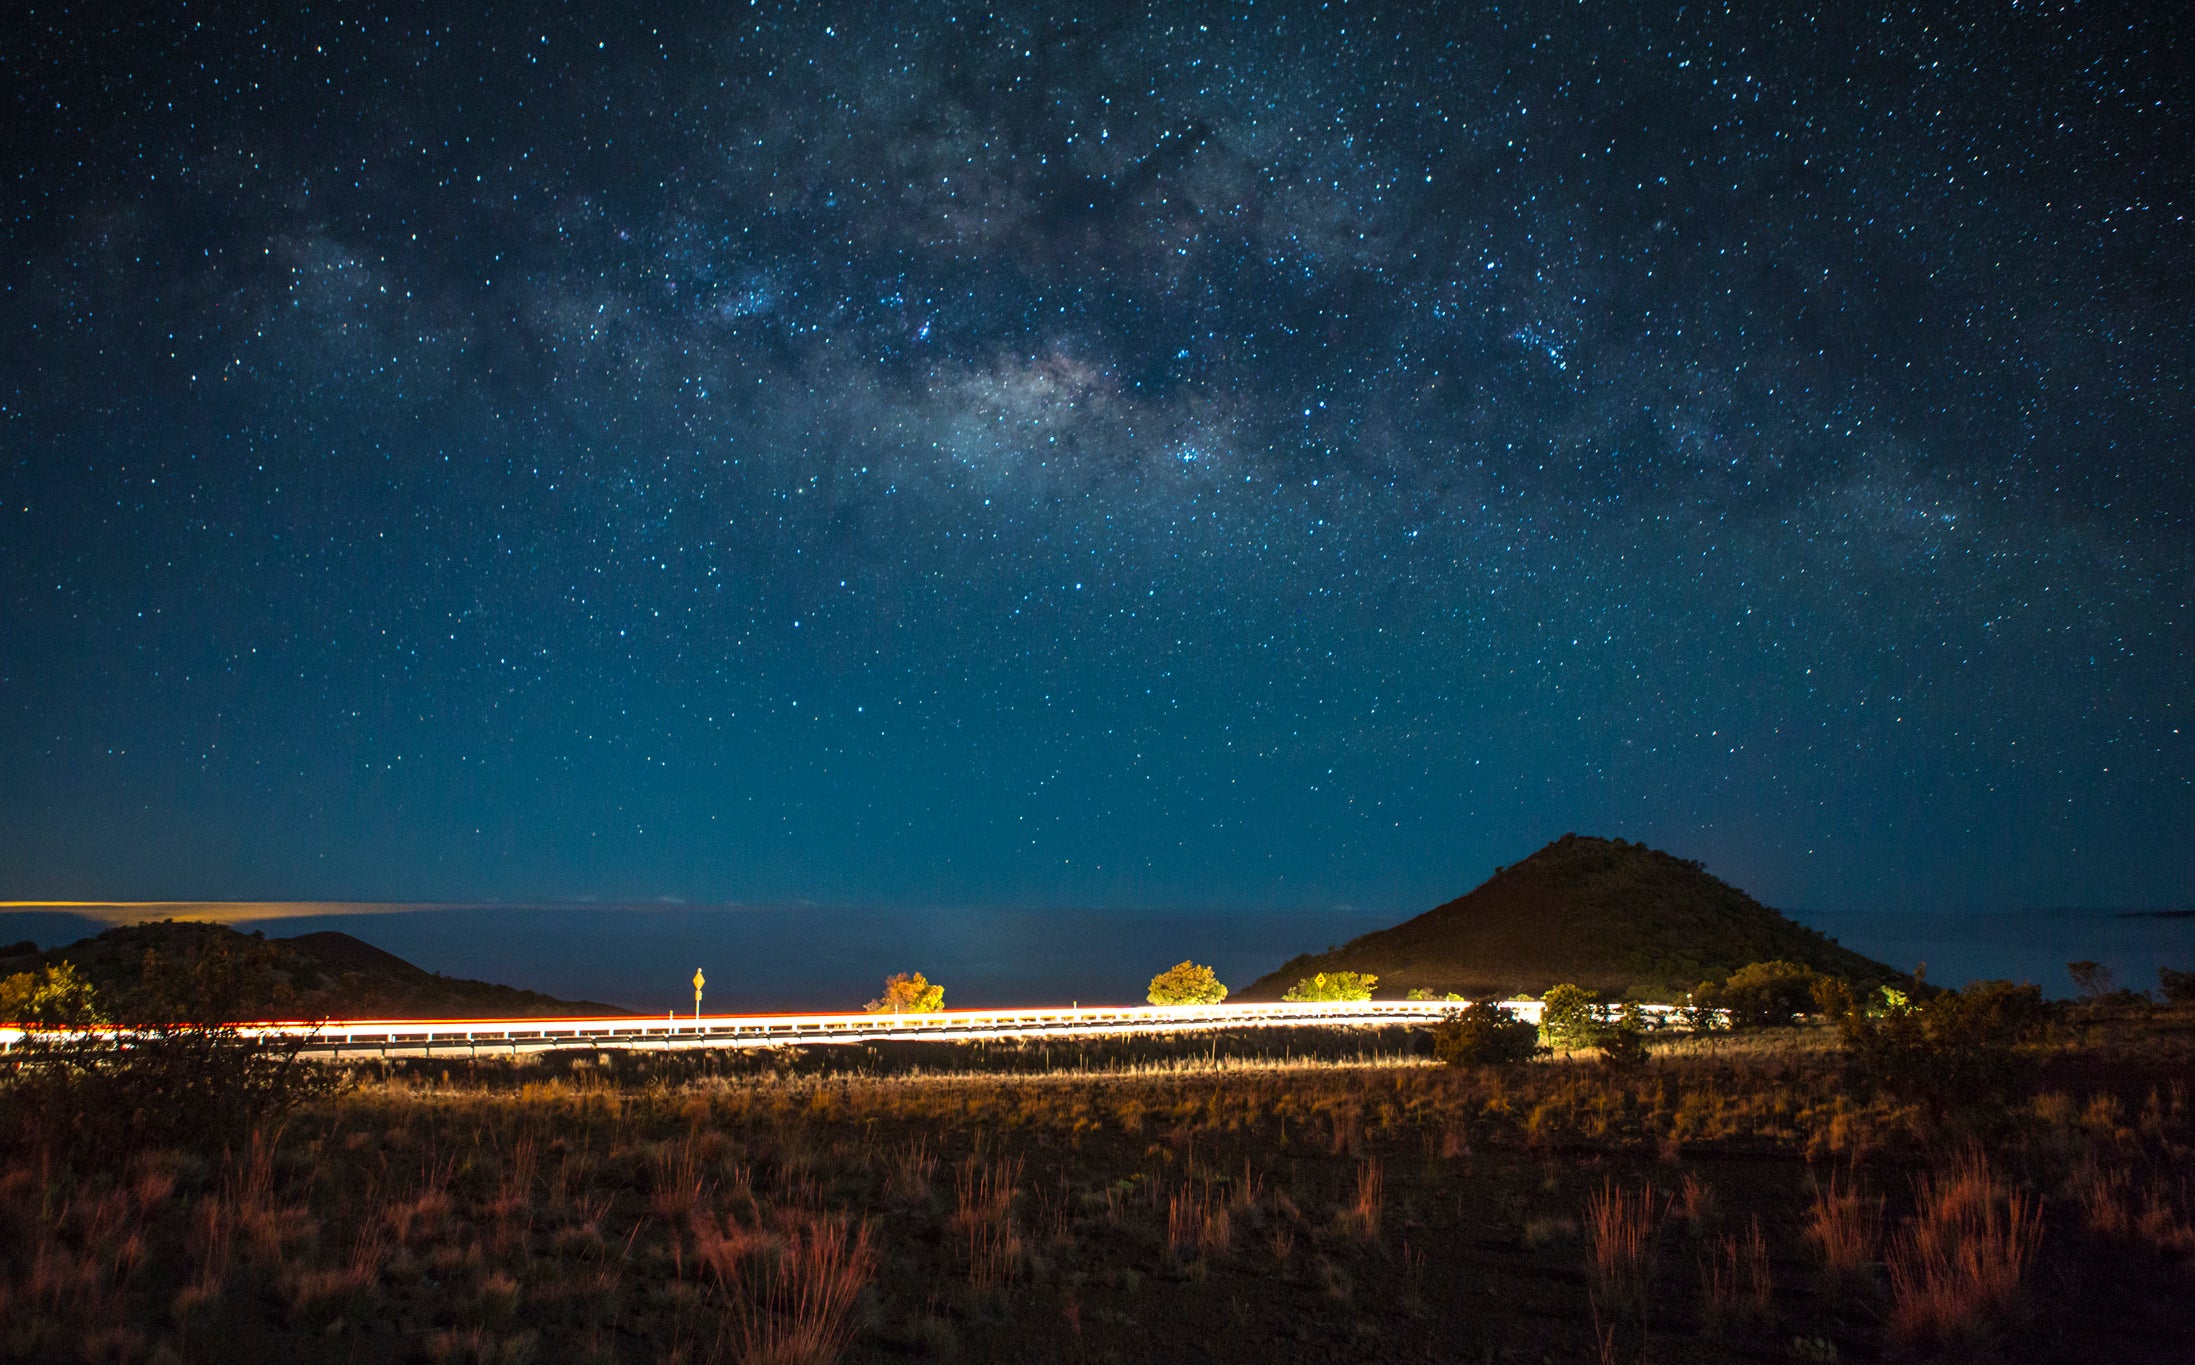  Steaua se uită deasupra norilor pe vulcanul Mauna Kea din Hawaii. (credit foto: JT Sorrell)